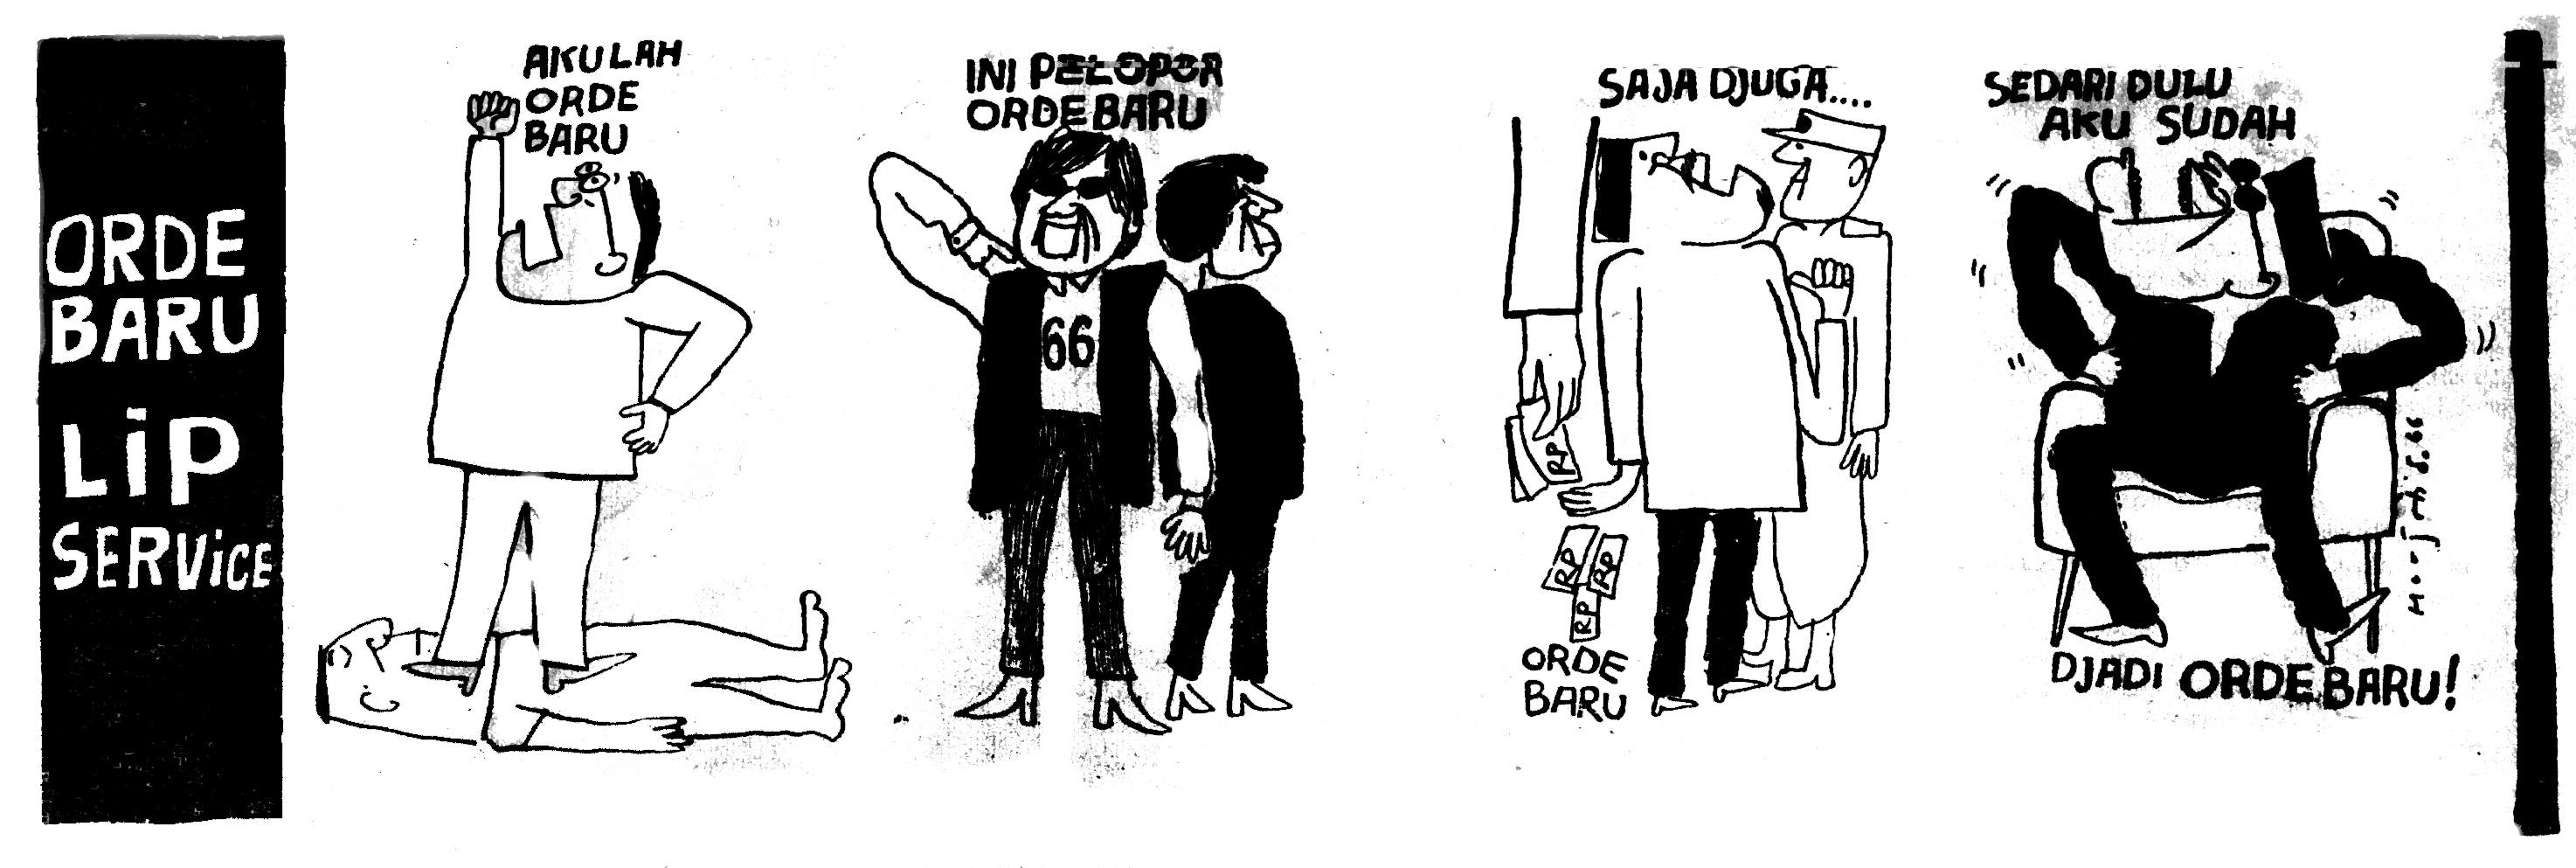 Kumpulan Gambar Karikatur Borgol Pak Polisi Puzzze